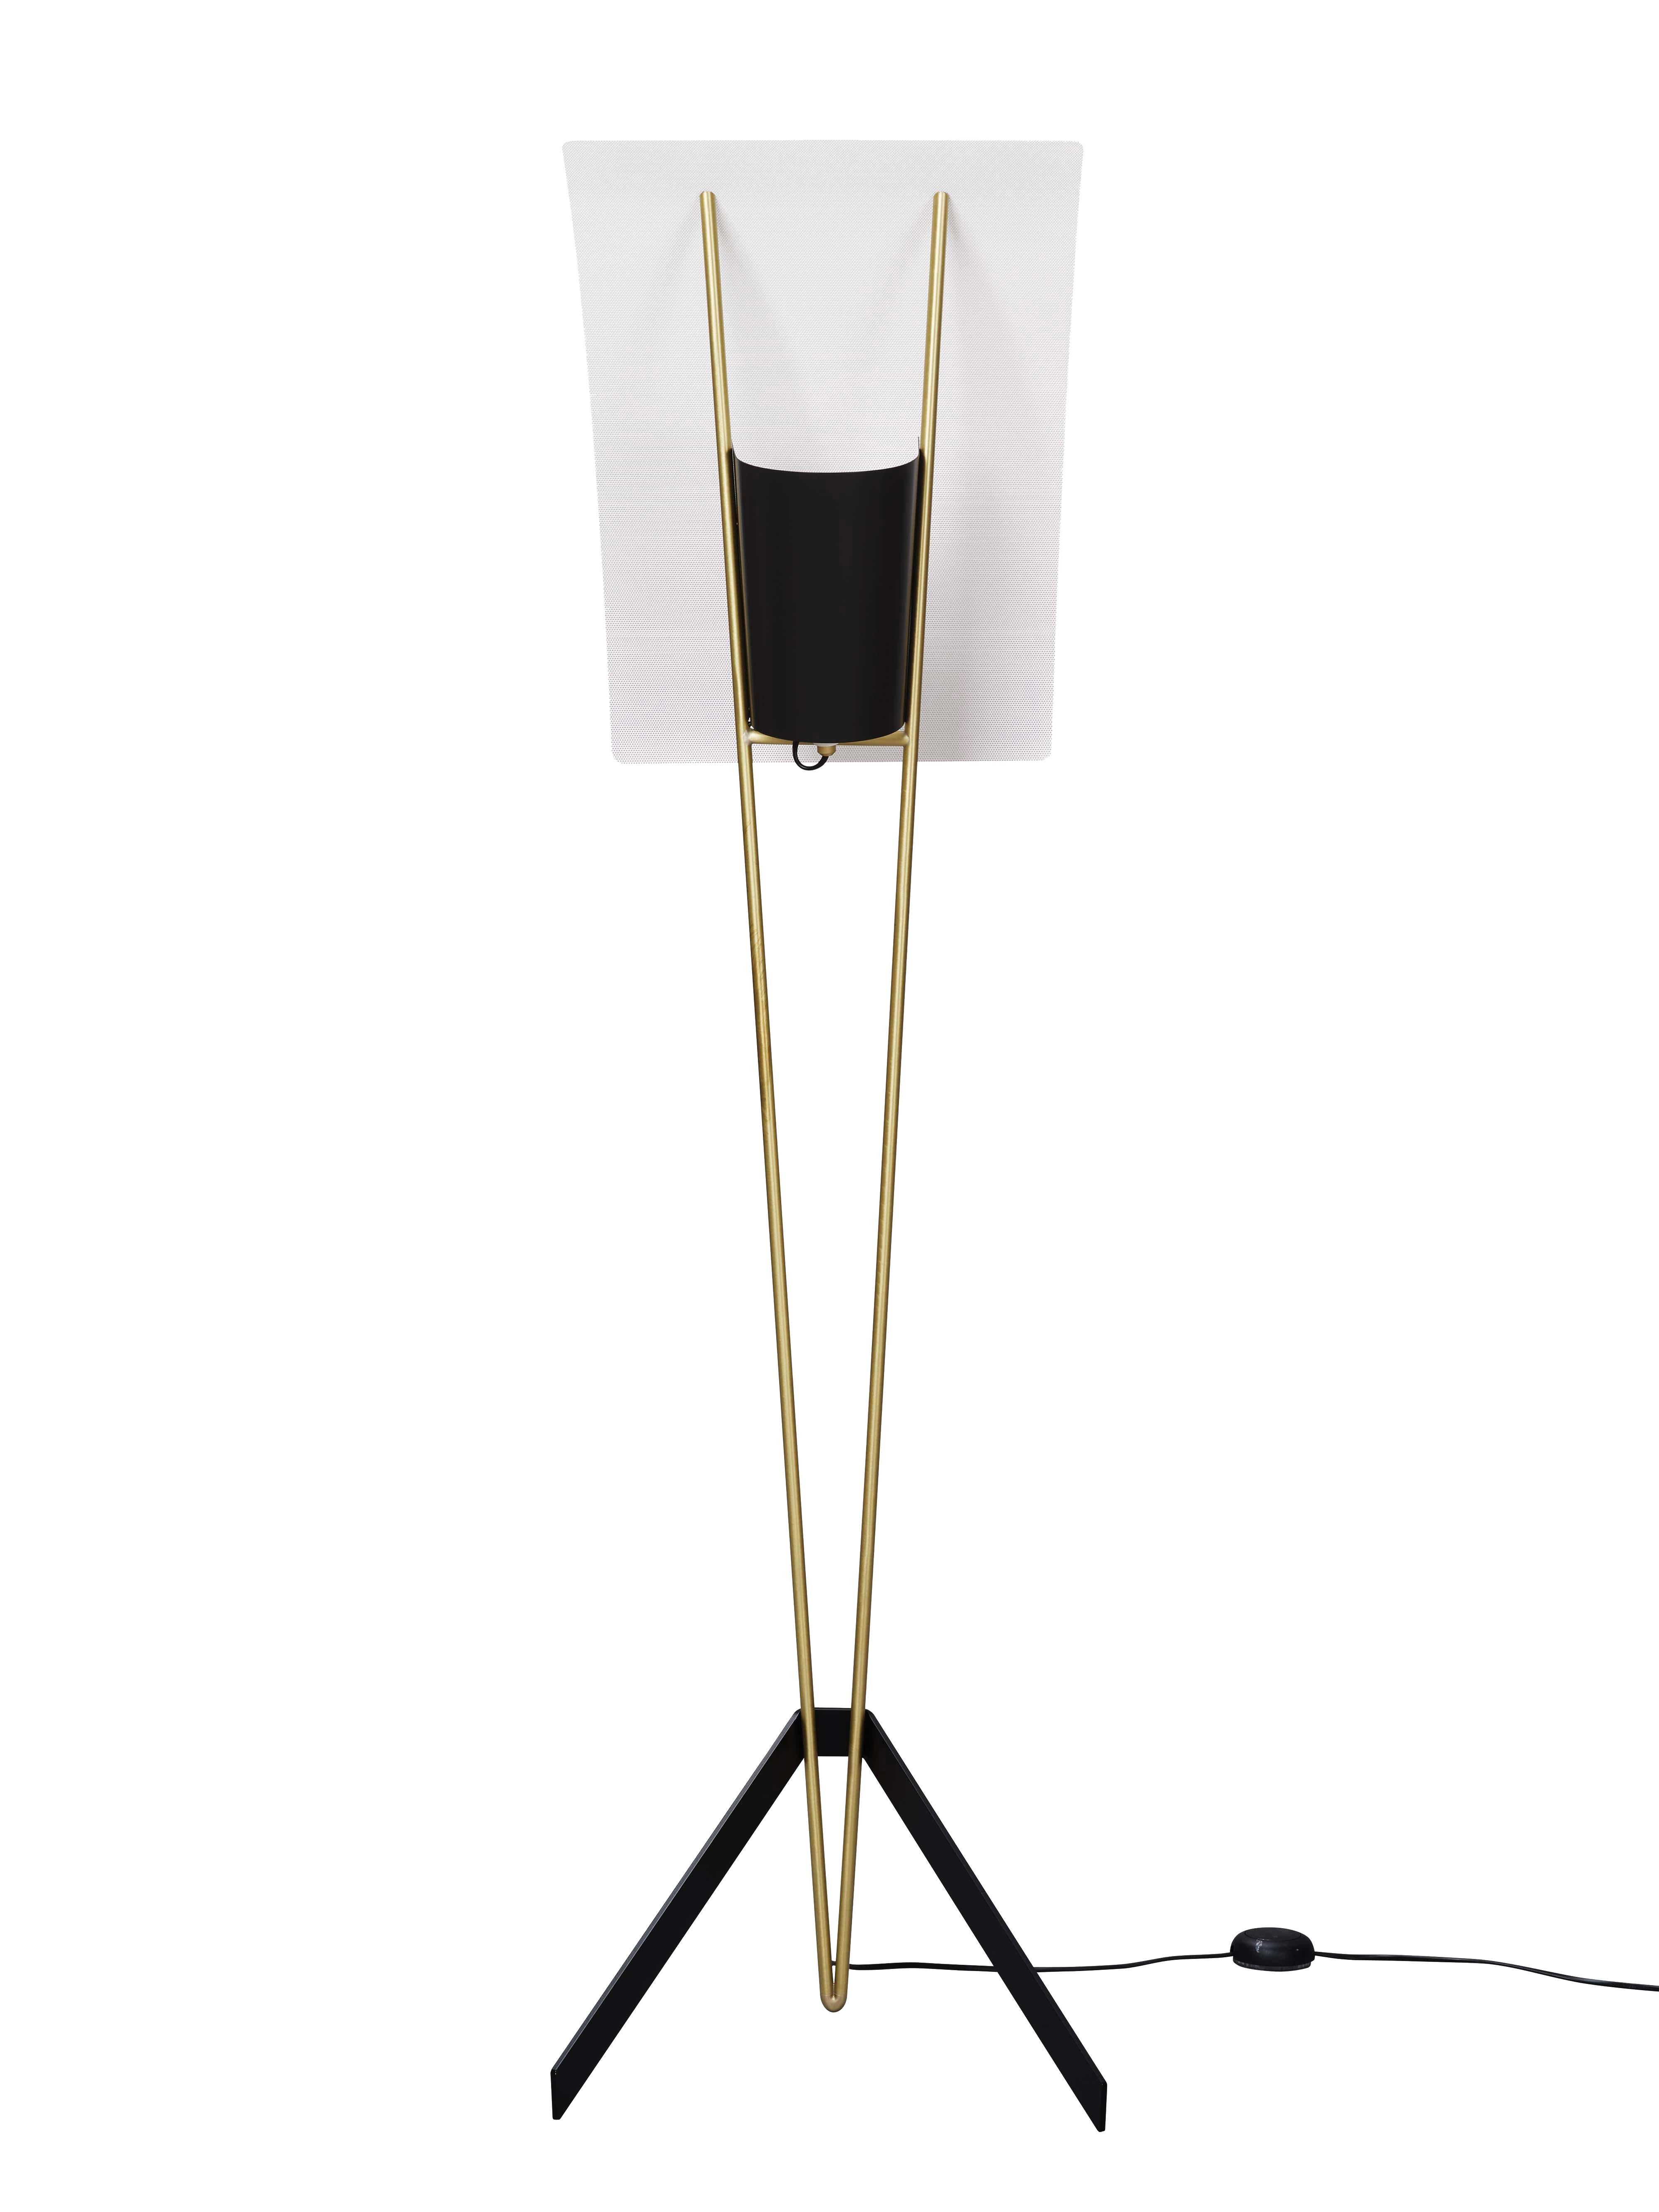 Pierre Guariche Kite Floor Lamp in White for Sammode Studio For Sale 9